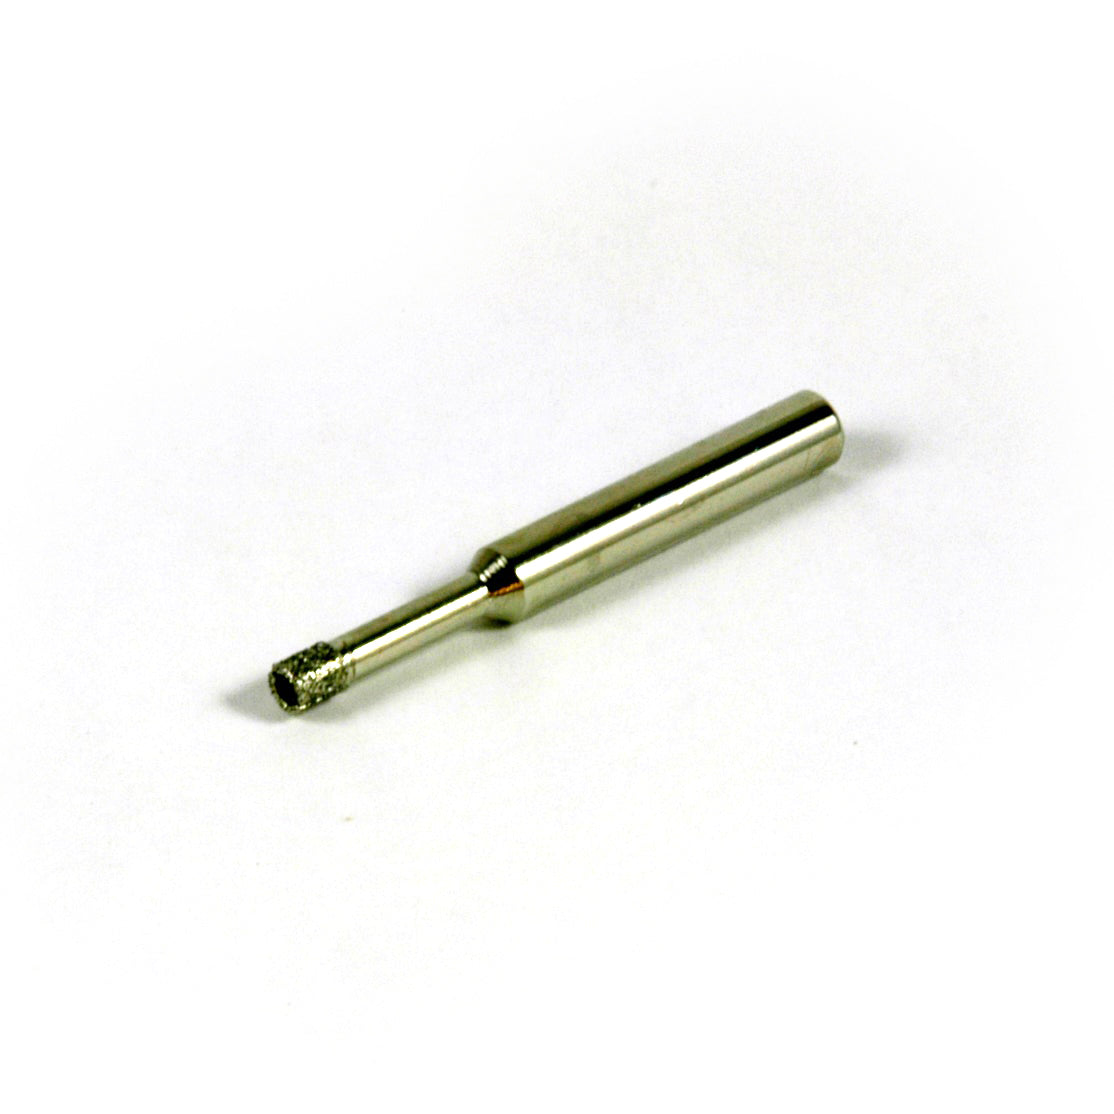 4mm (1/8") Diamond Core Drill